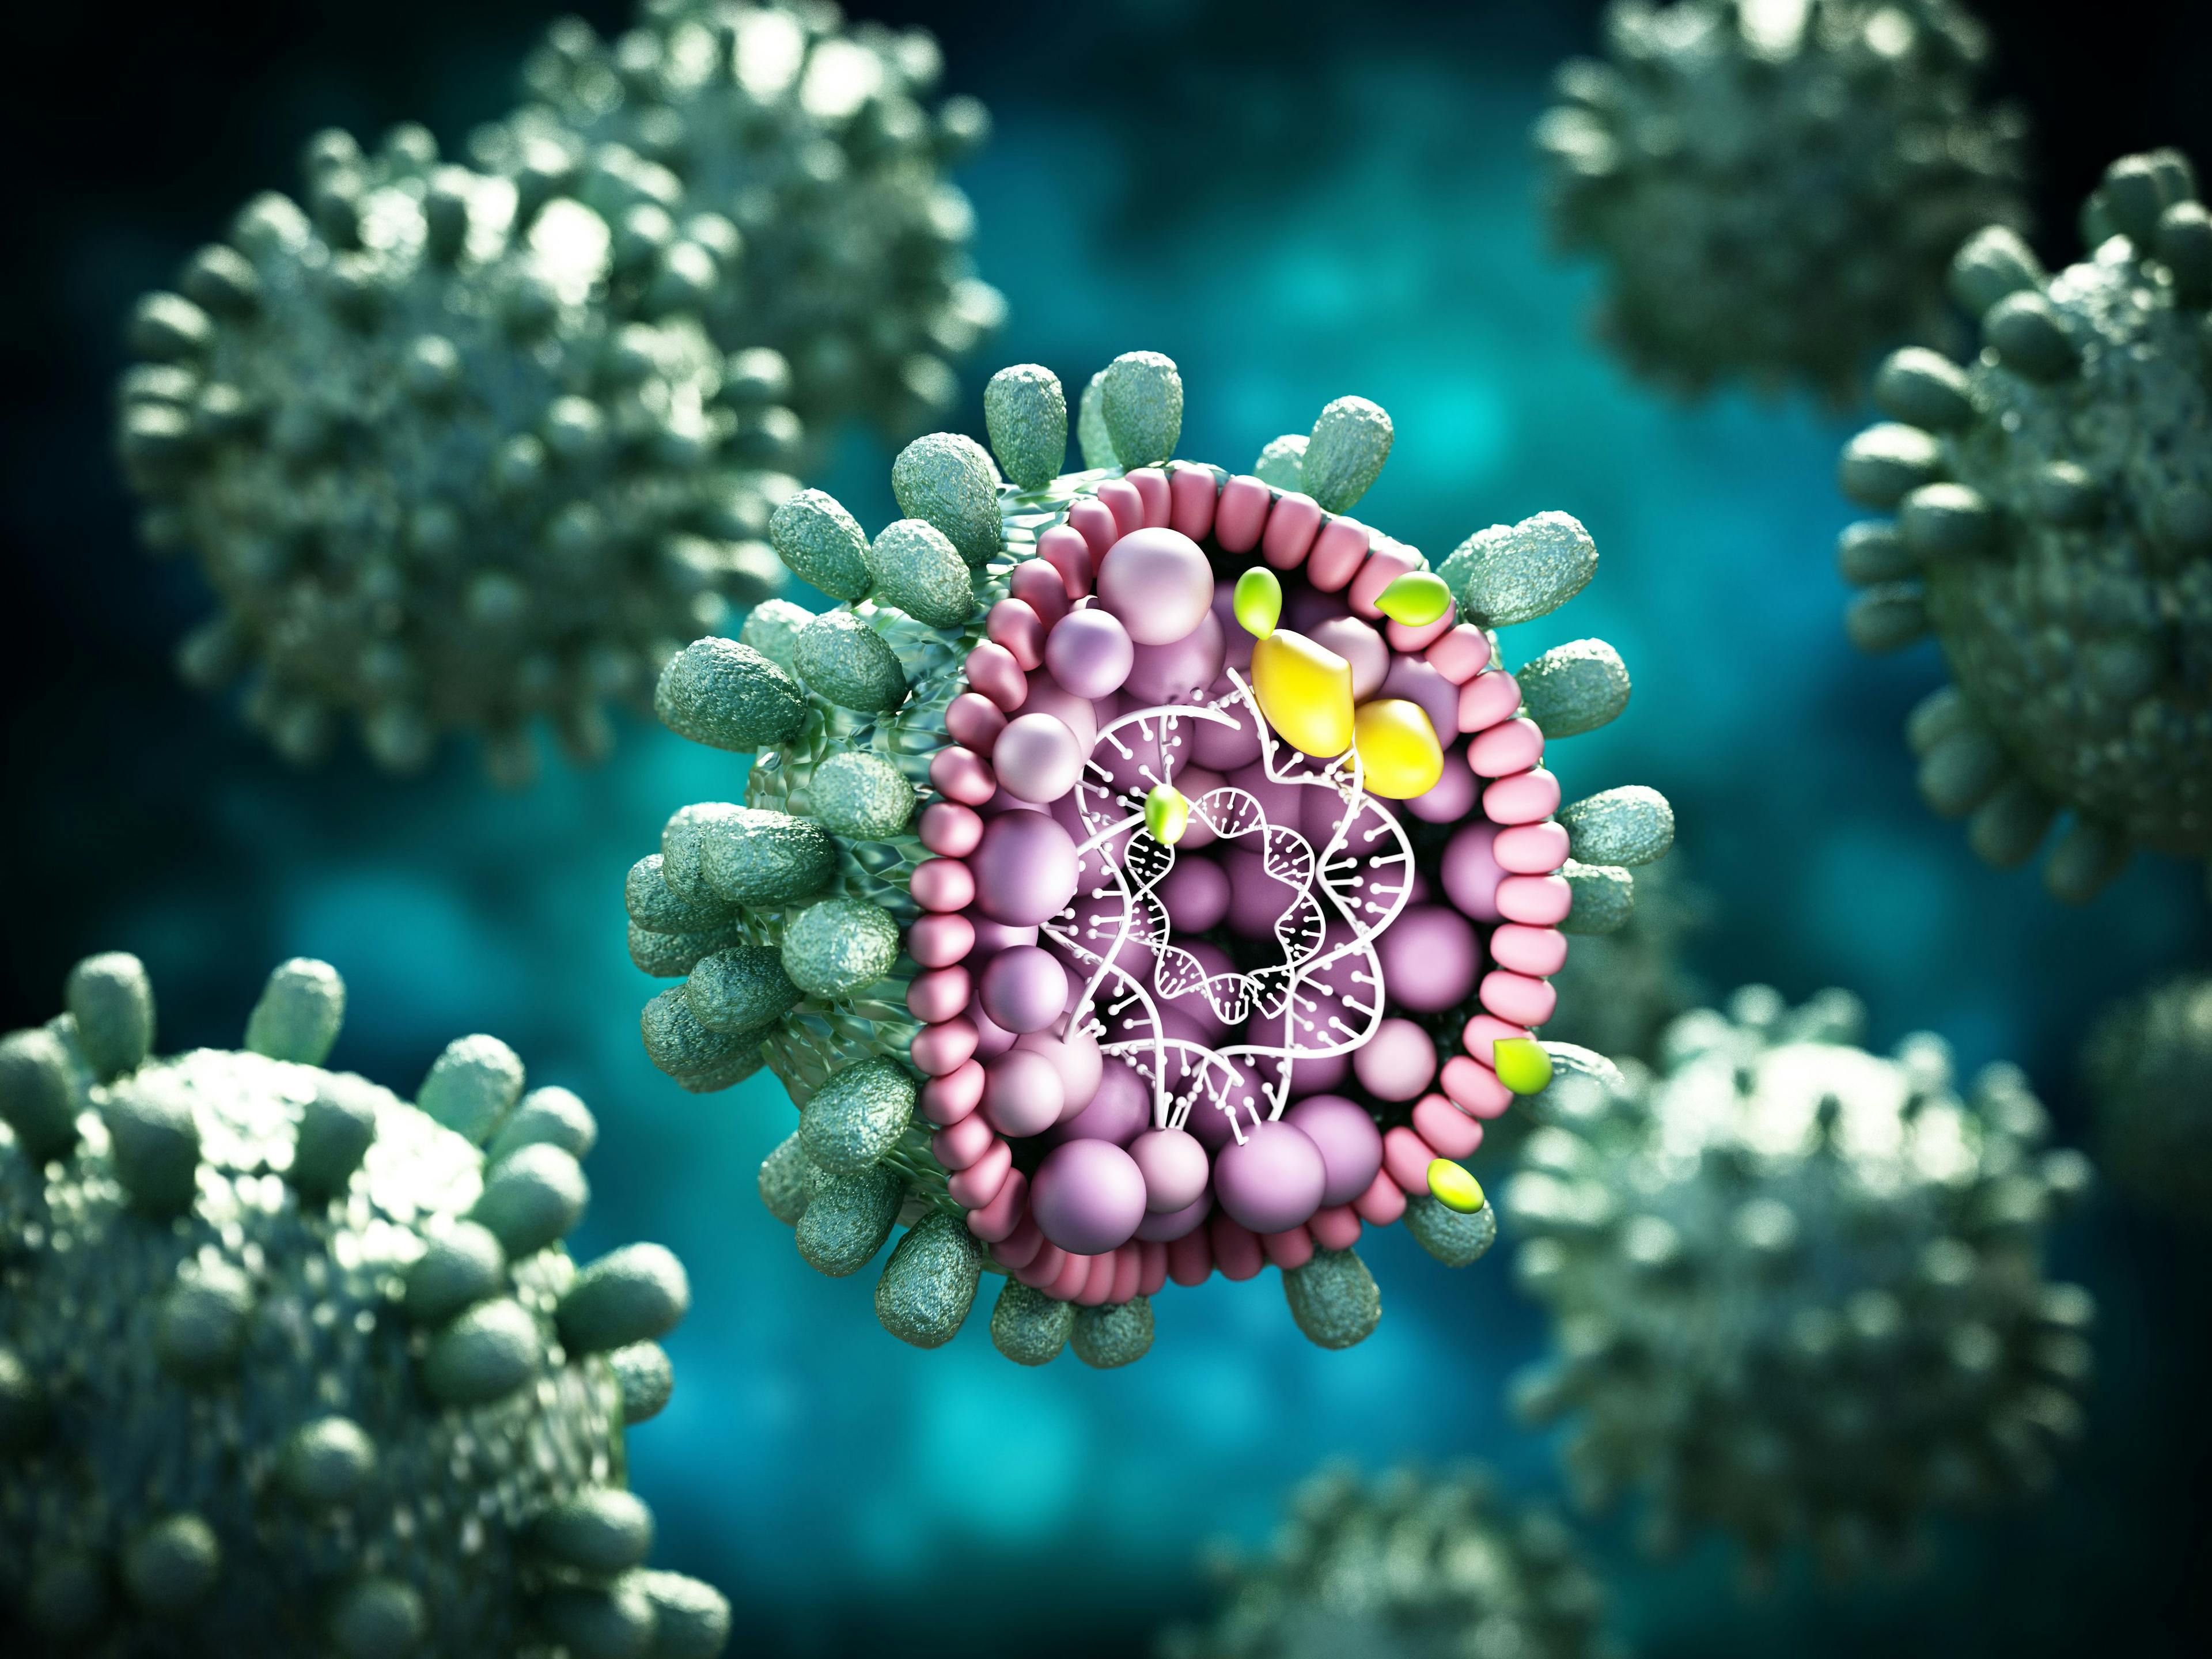 Image credit: Destina | stock.adobe.com. Structural detail of Hepatitis B virus on blue-green background. 3D illustration